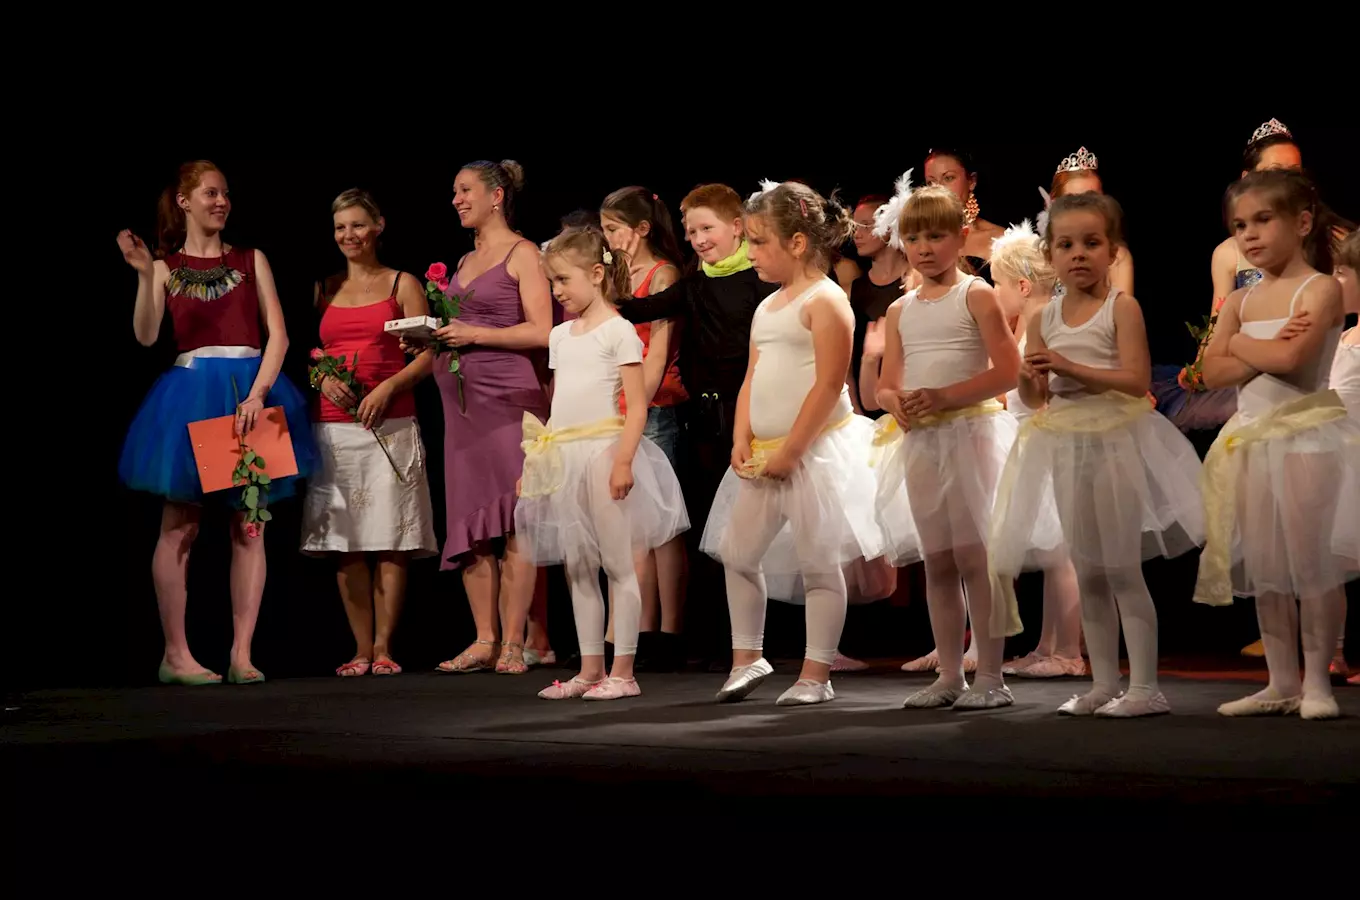 Taneční škola Baby dance - kurzy pro malé baletky v Praze